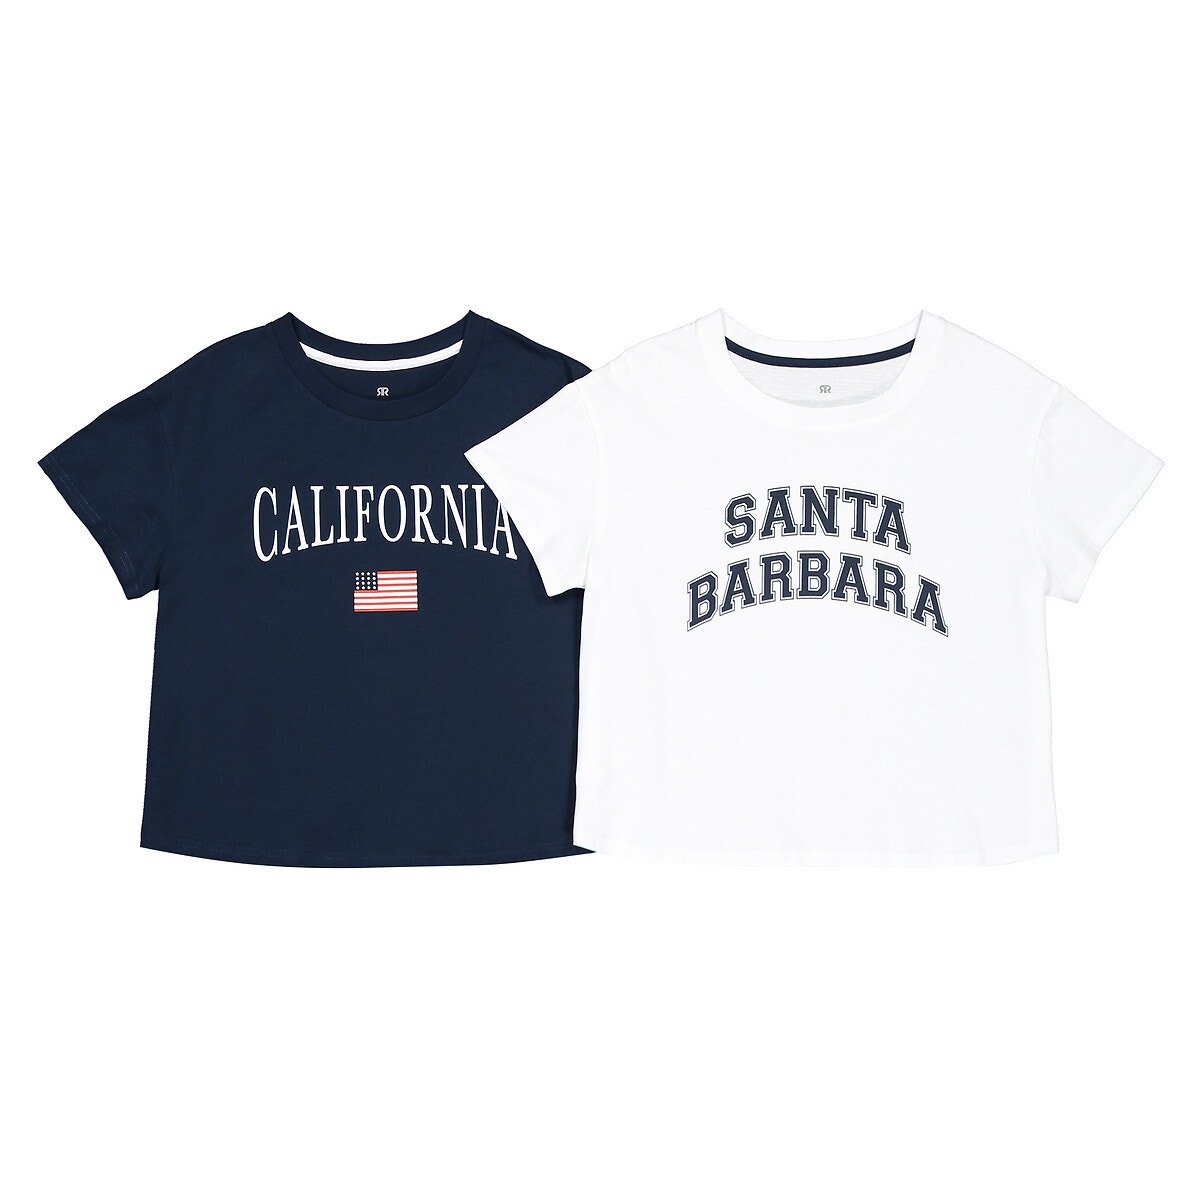 ΠΑΙΔΙ | Μπλούζες & Πουκάμισα | Τοπ Σετ 2 T-shirt από οργανικό βαμβάκι, 10 - 18 ετών